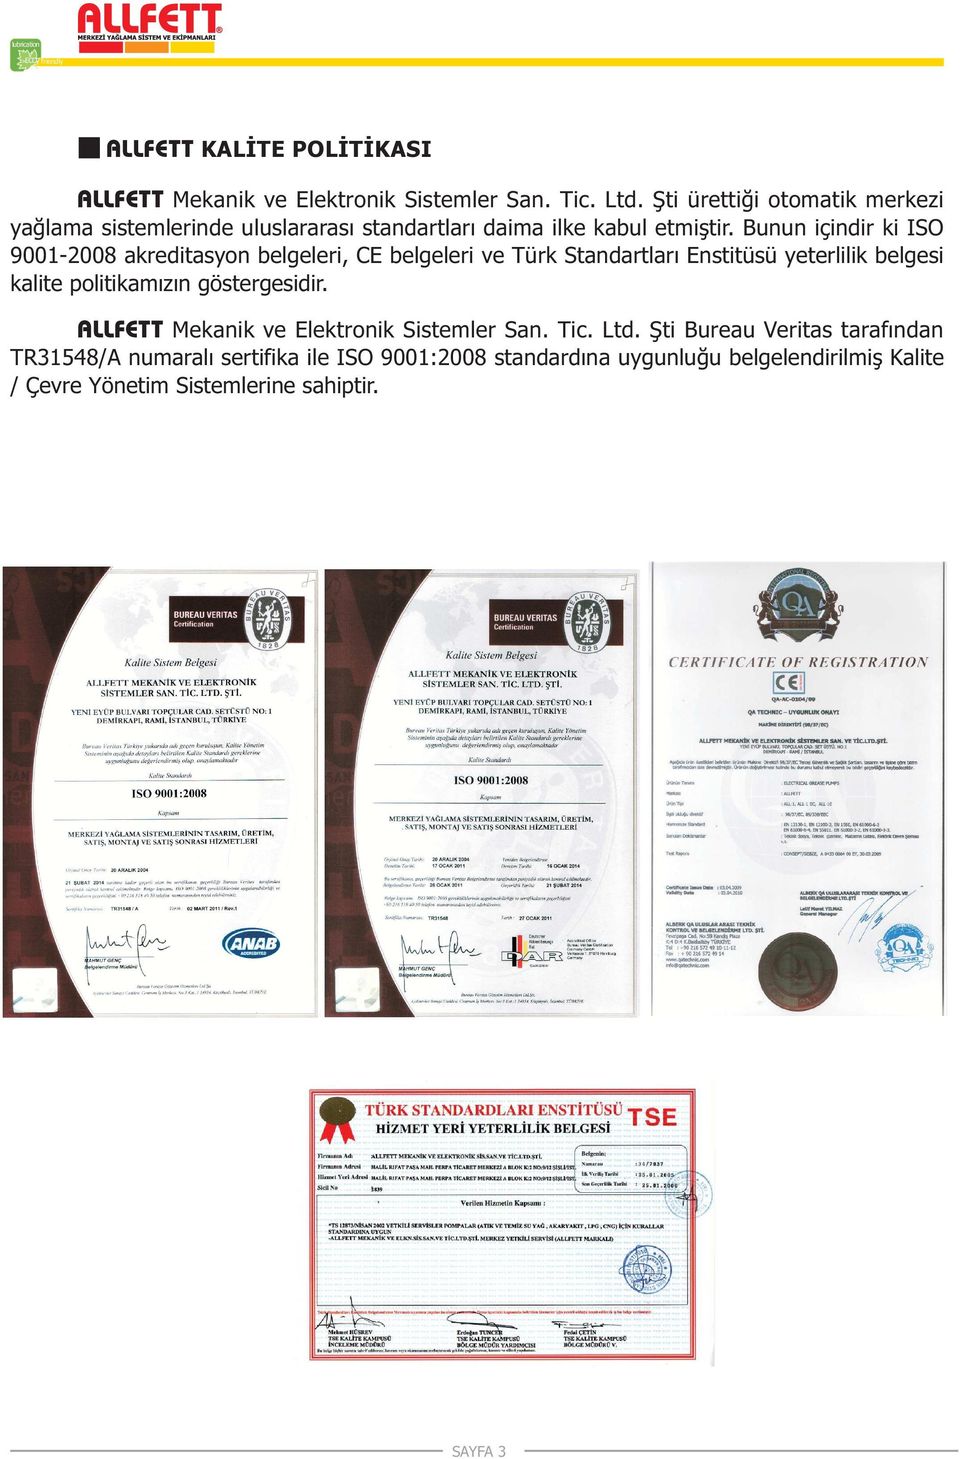 Bunun içindir ki ISO 9001-2008 akreditasyon belgeleri, CE belgeleri ve Türk Standartlarý Enstitüsü yeterlilik belgesi kalite politikamýzýn